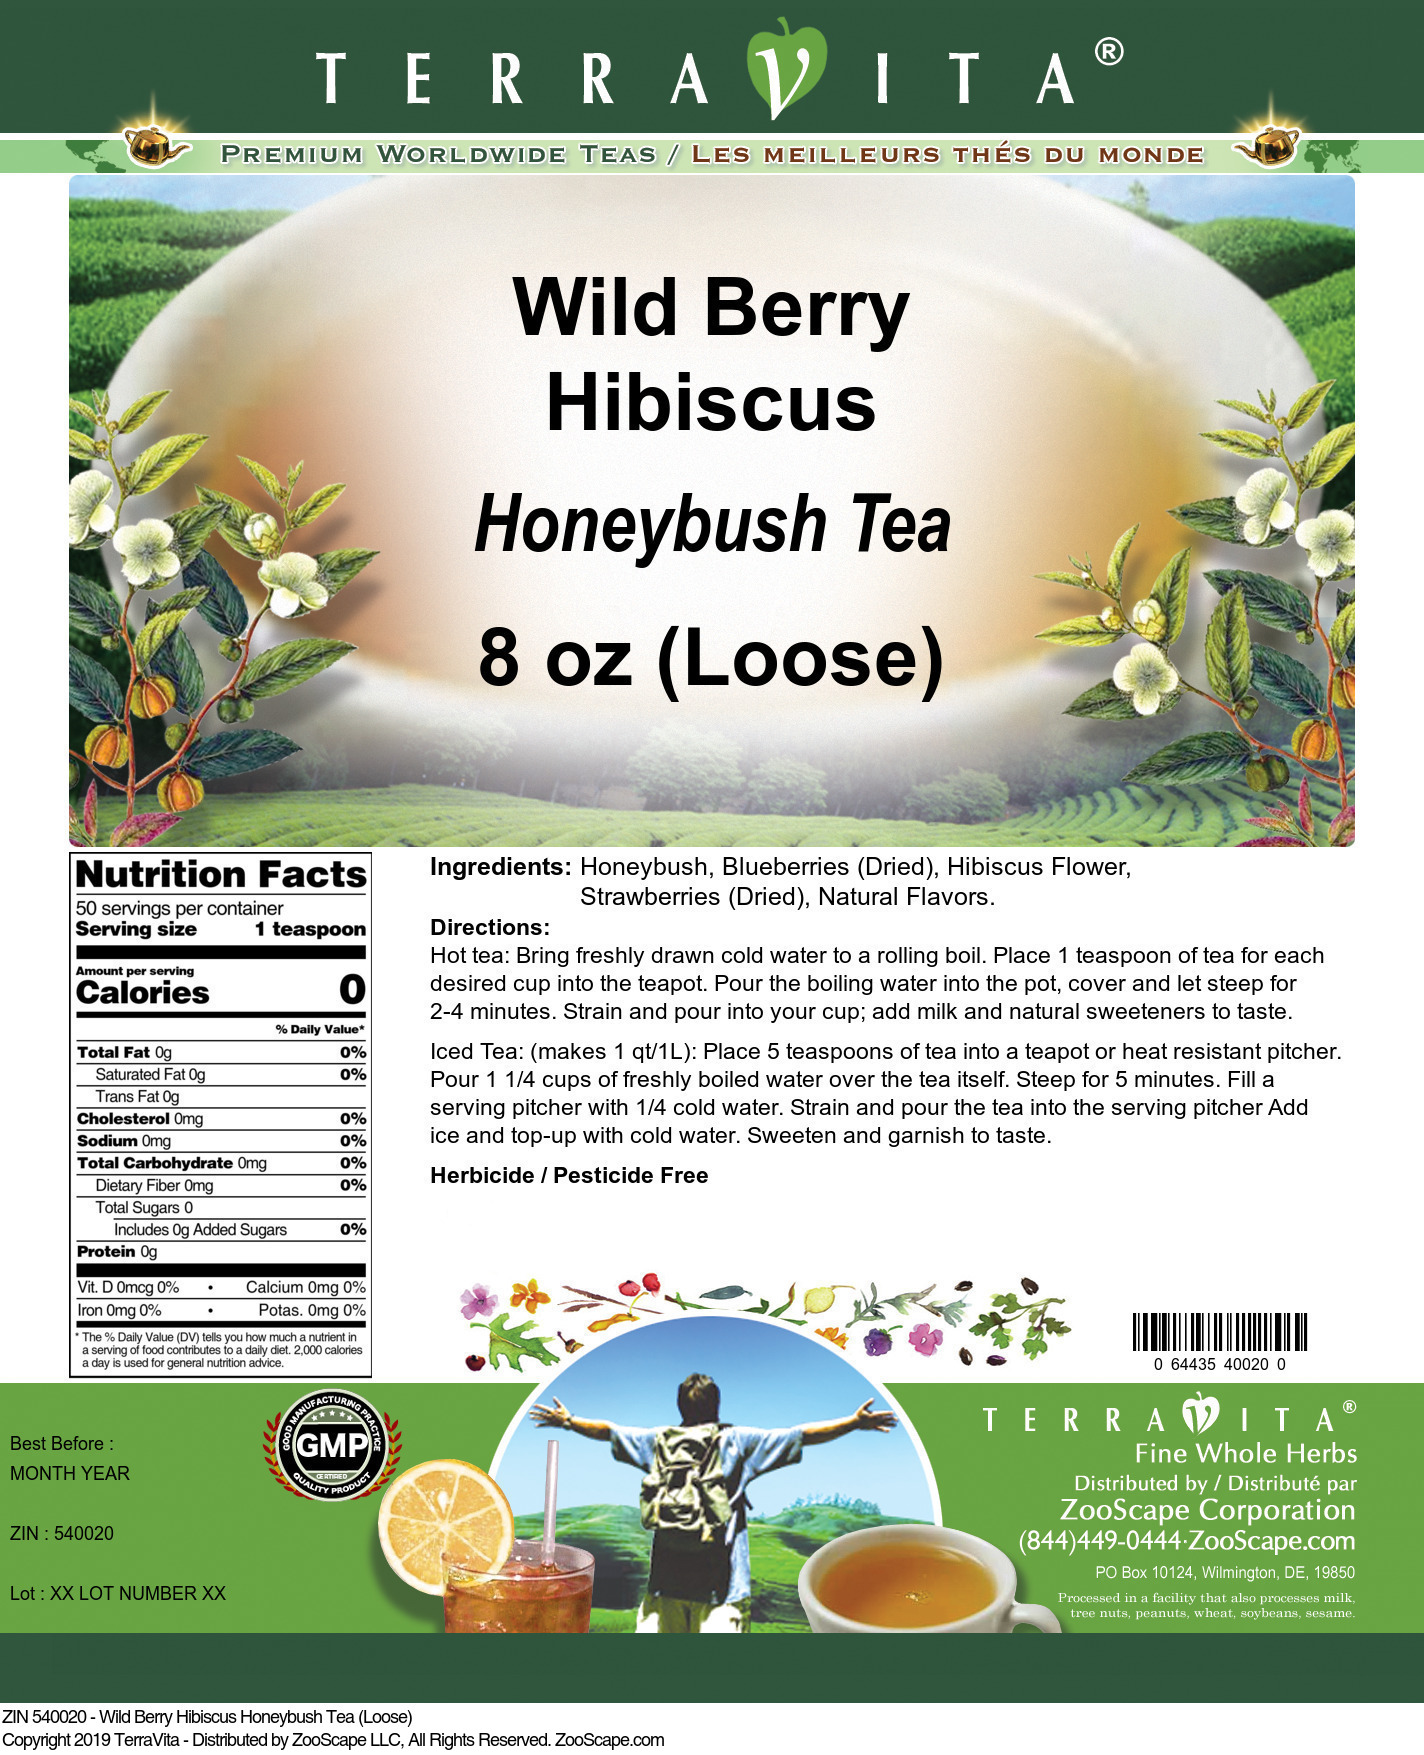 Wild Berry Hibiscus Honeybush Tea (Loose) - Label